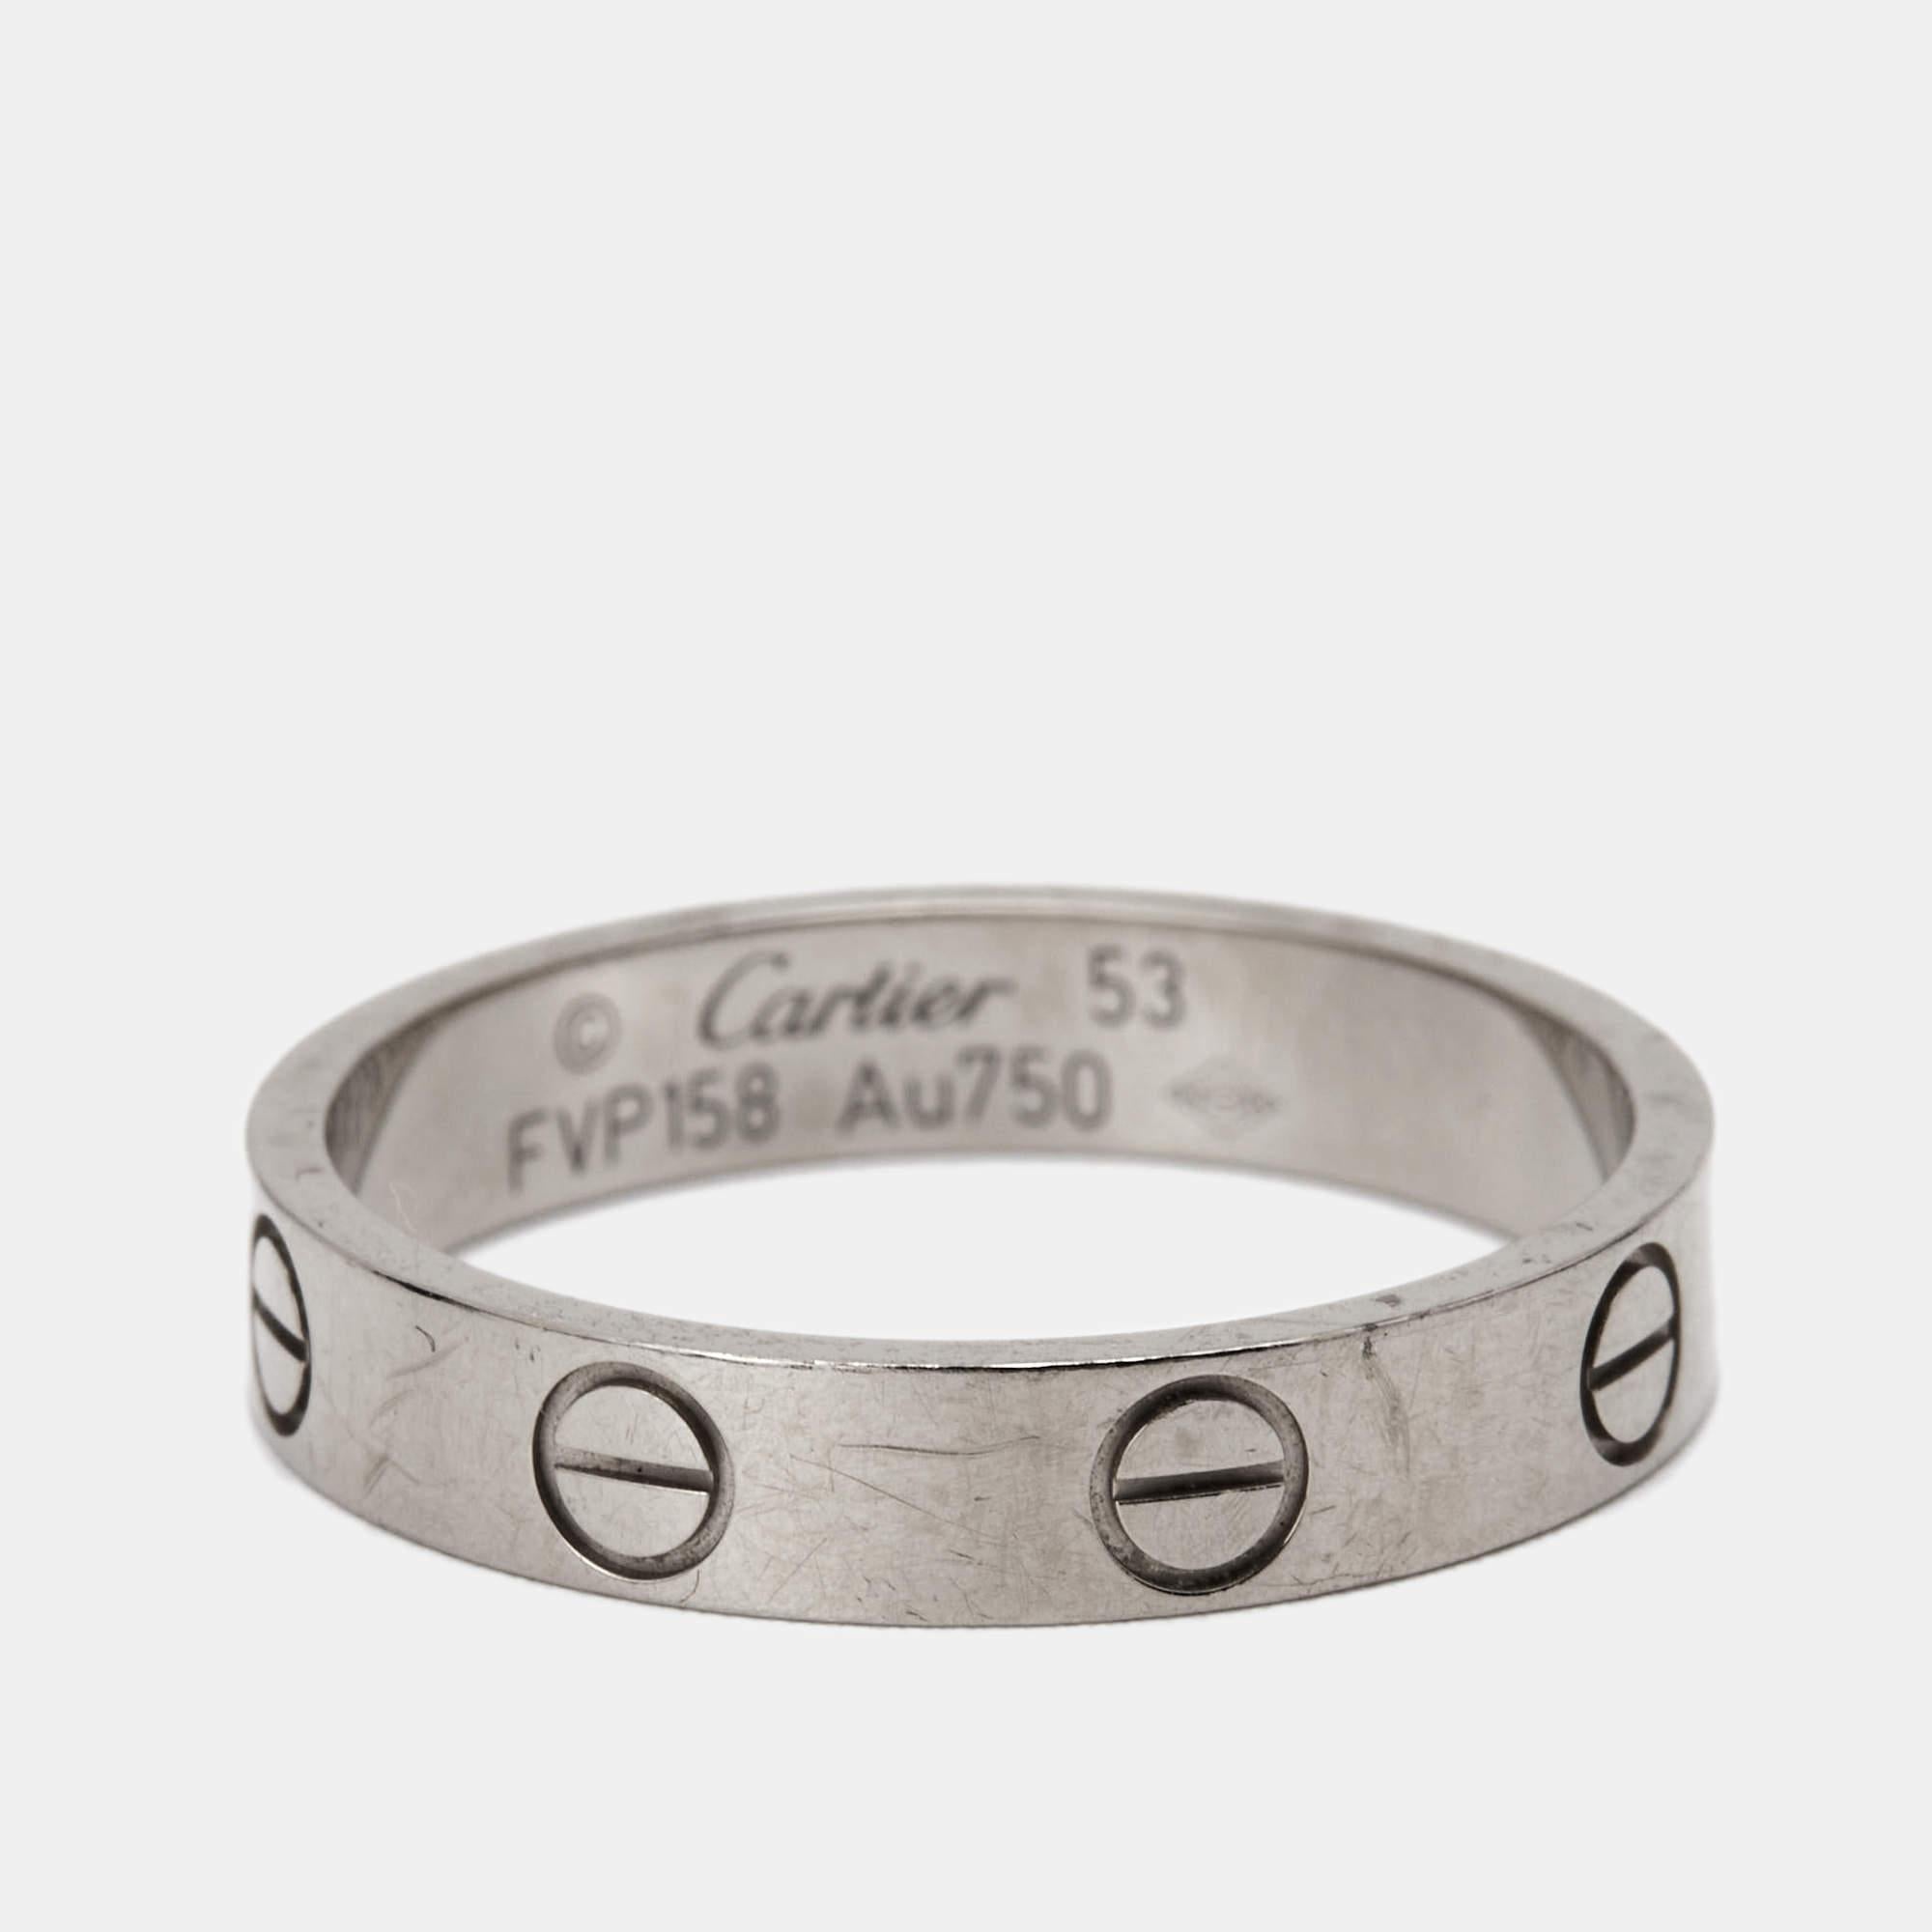 Cartier Alliance étroite Love en or blanc 18 carats, taille 53 3